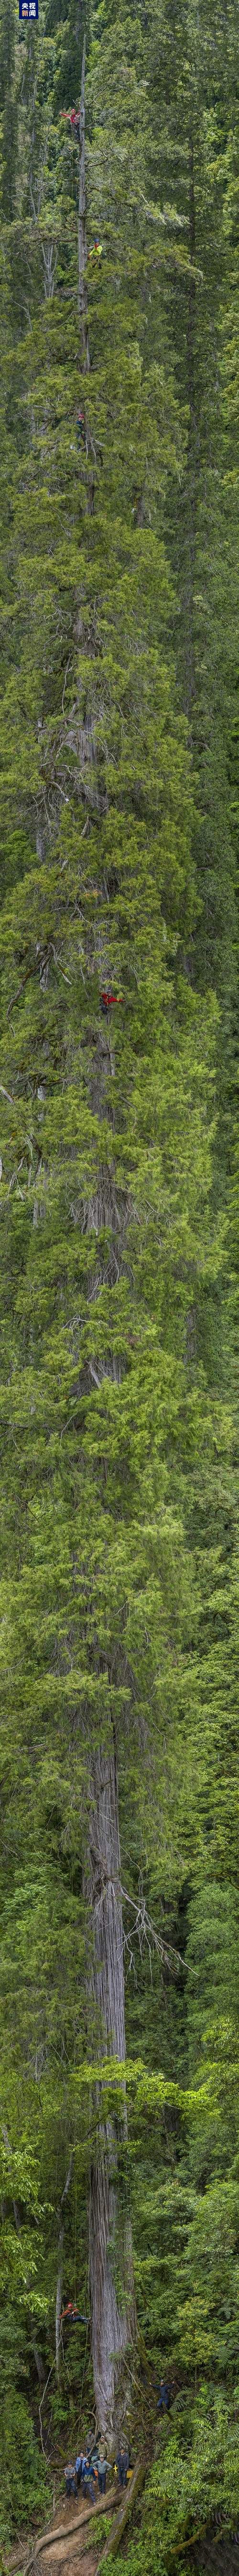 藏南柏木巨树群落综合科考完成 发布2棵巨树等身照